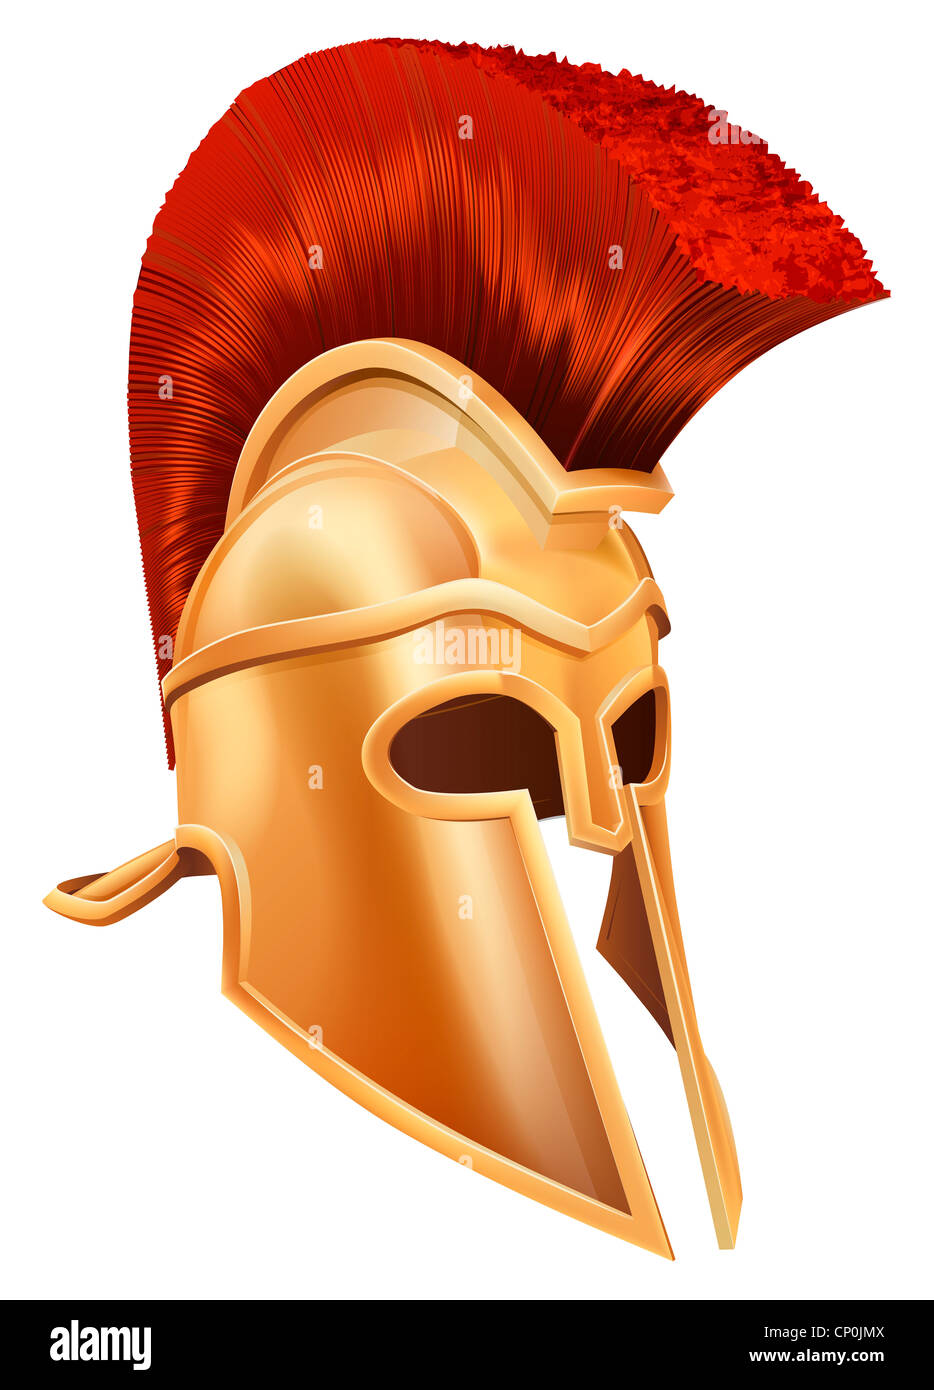 Illustration d'un Trojan Spartan, bronze Casque Casque Casque romain, grec ou casque. De style corinthien. Banque D'Images